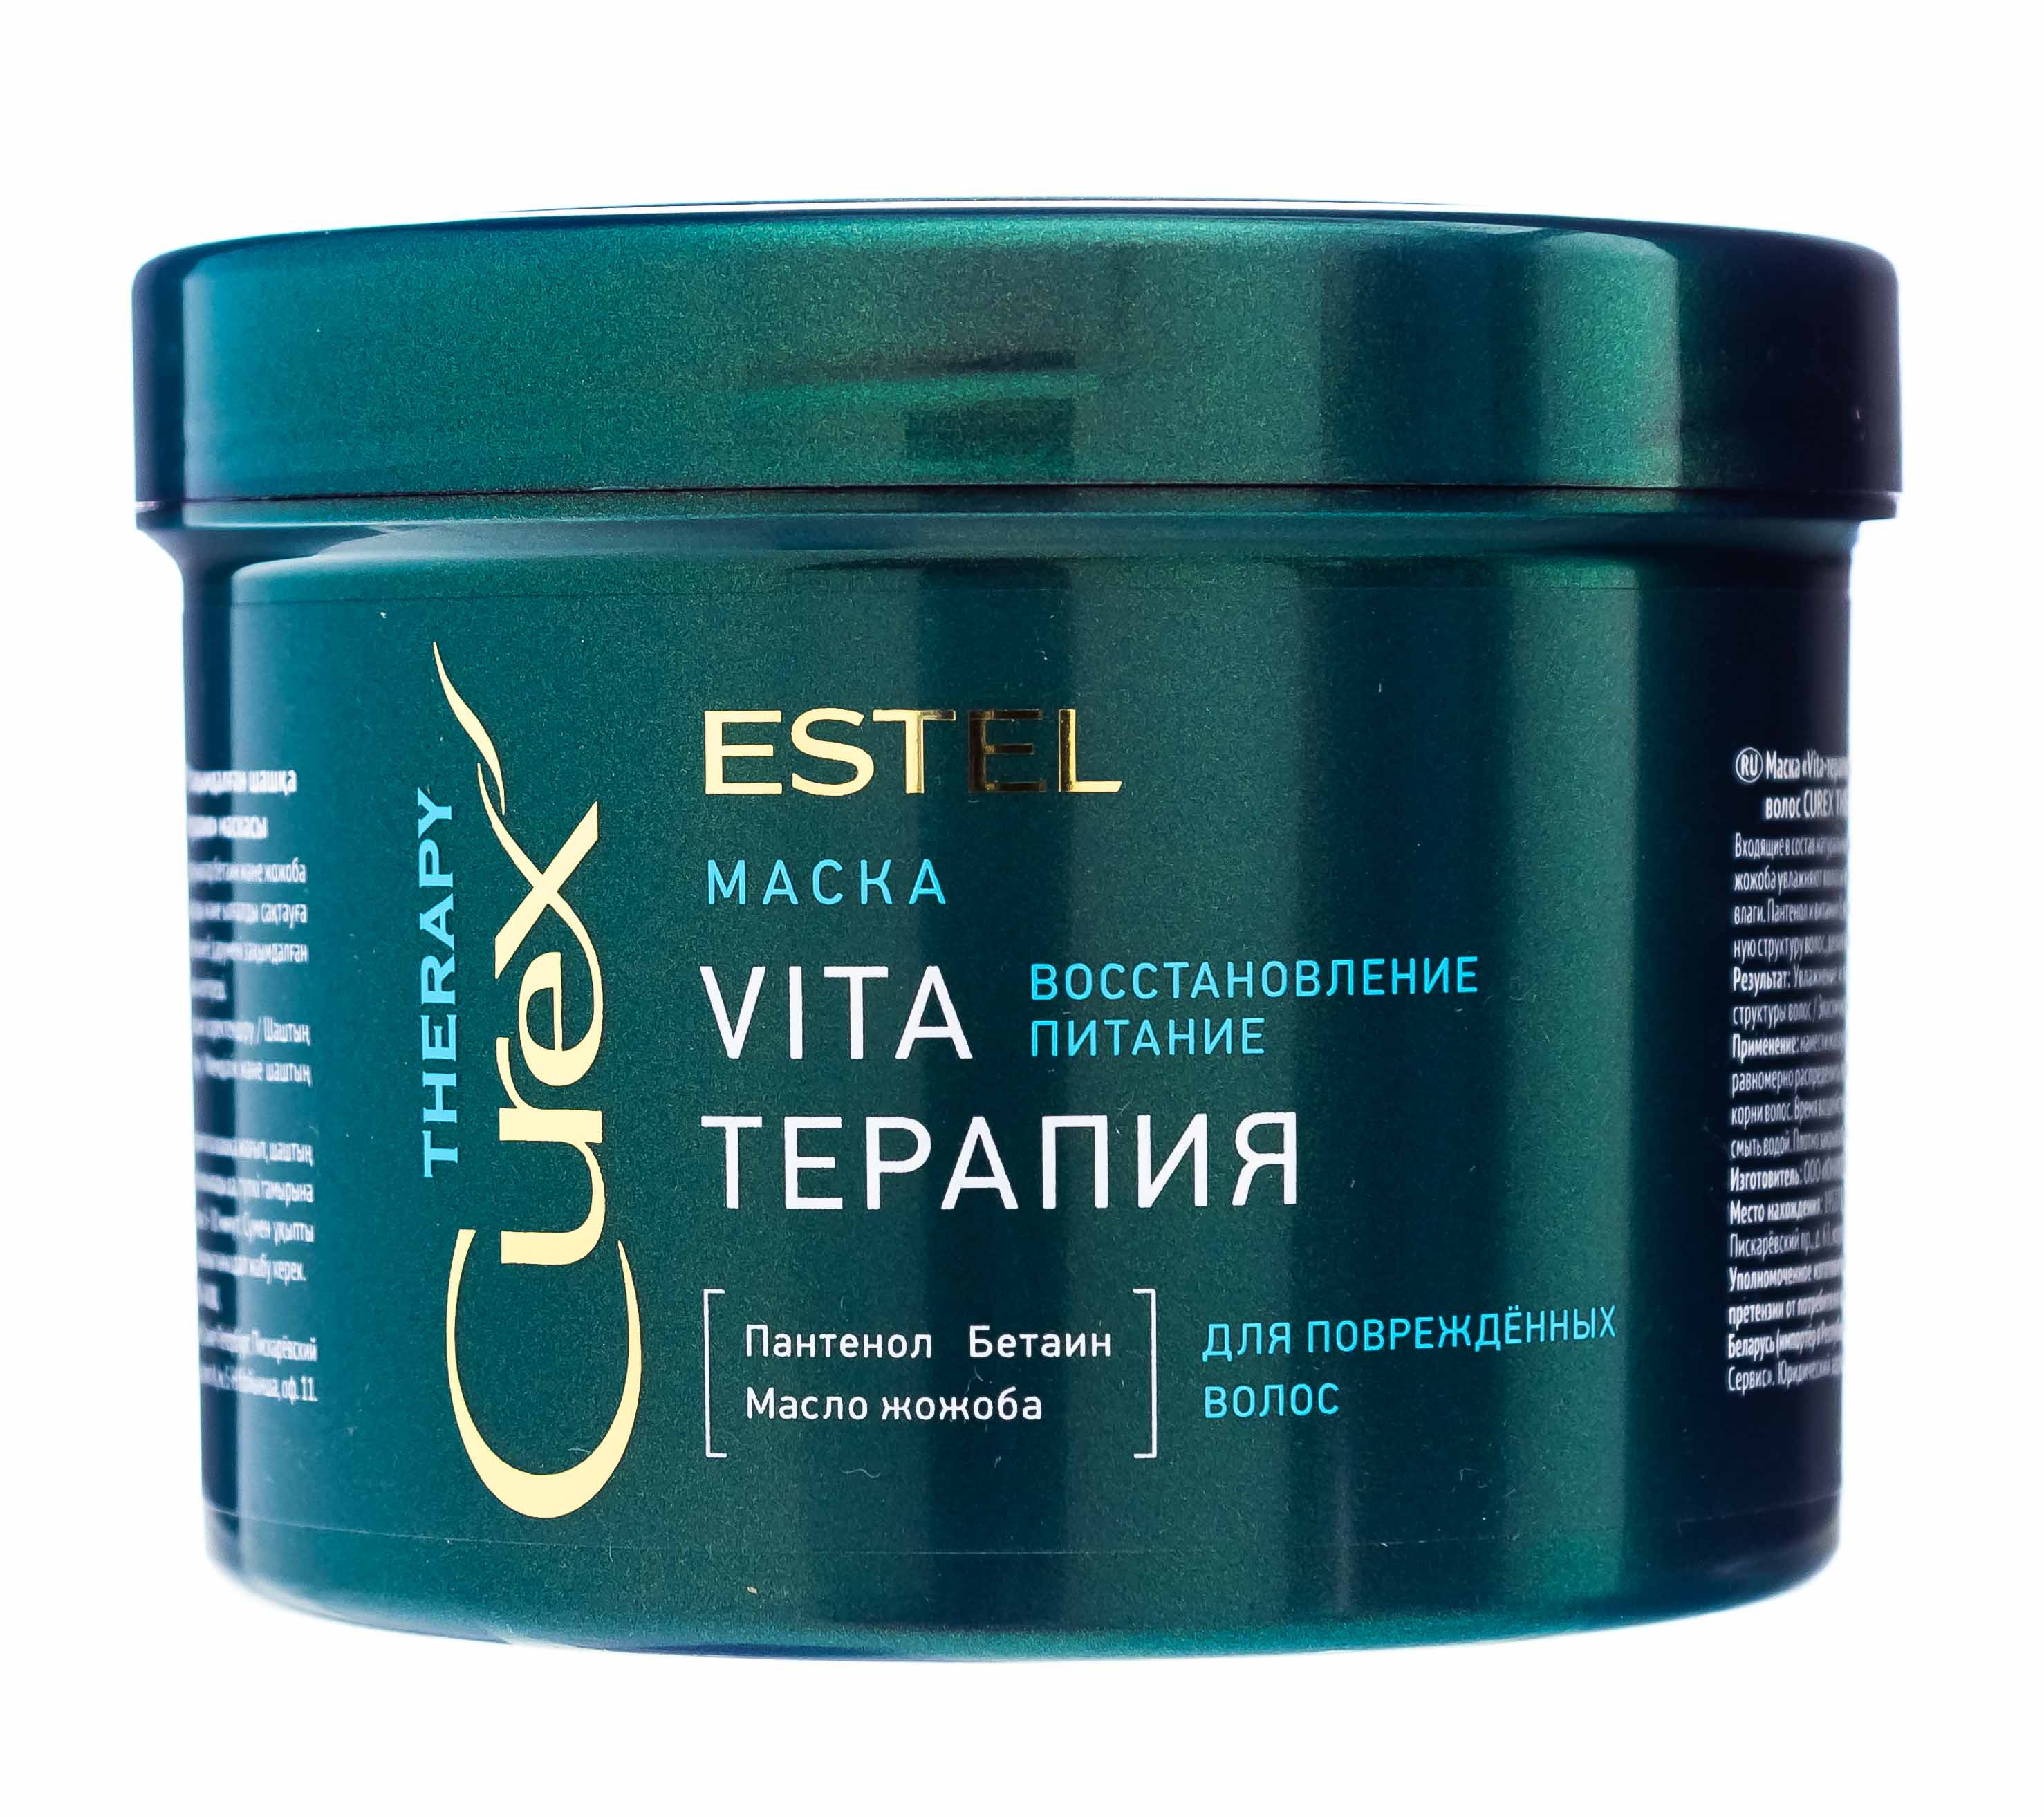 Маска для волос vita. Маска Vita - терапия Estel Curex Therapy для повреждённых волос 500. Маска "Vita-терапия" для повреждённых волос Curex Therapy (500 мл). Estel Curex маска Vita маска терапия.